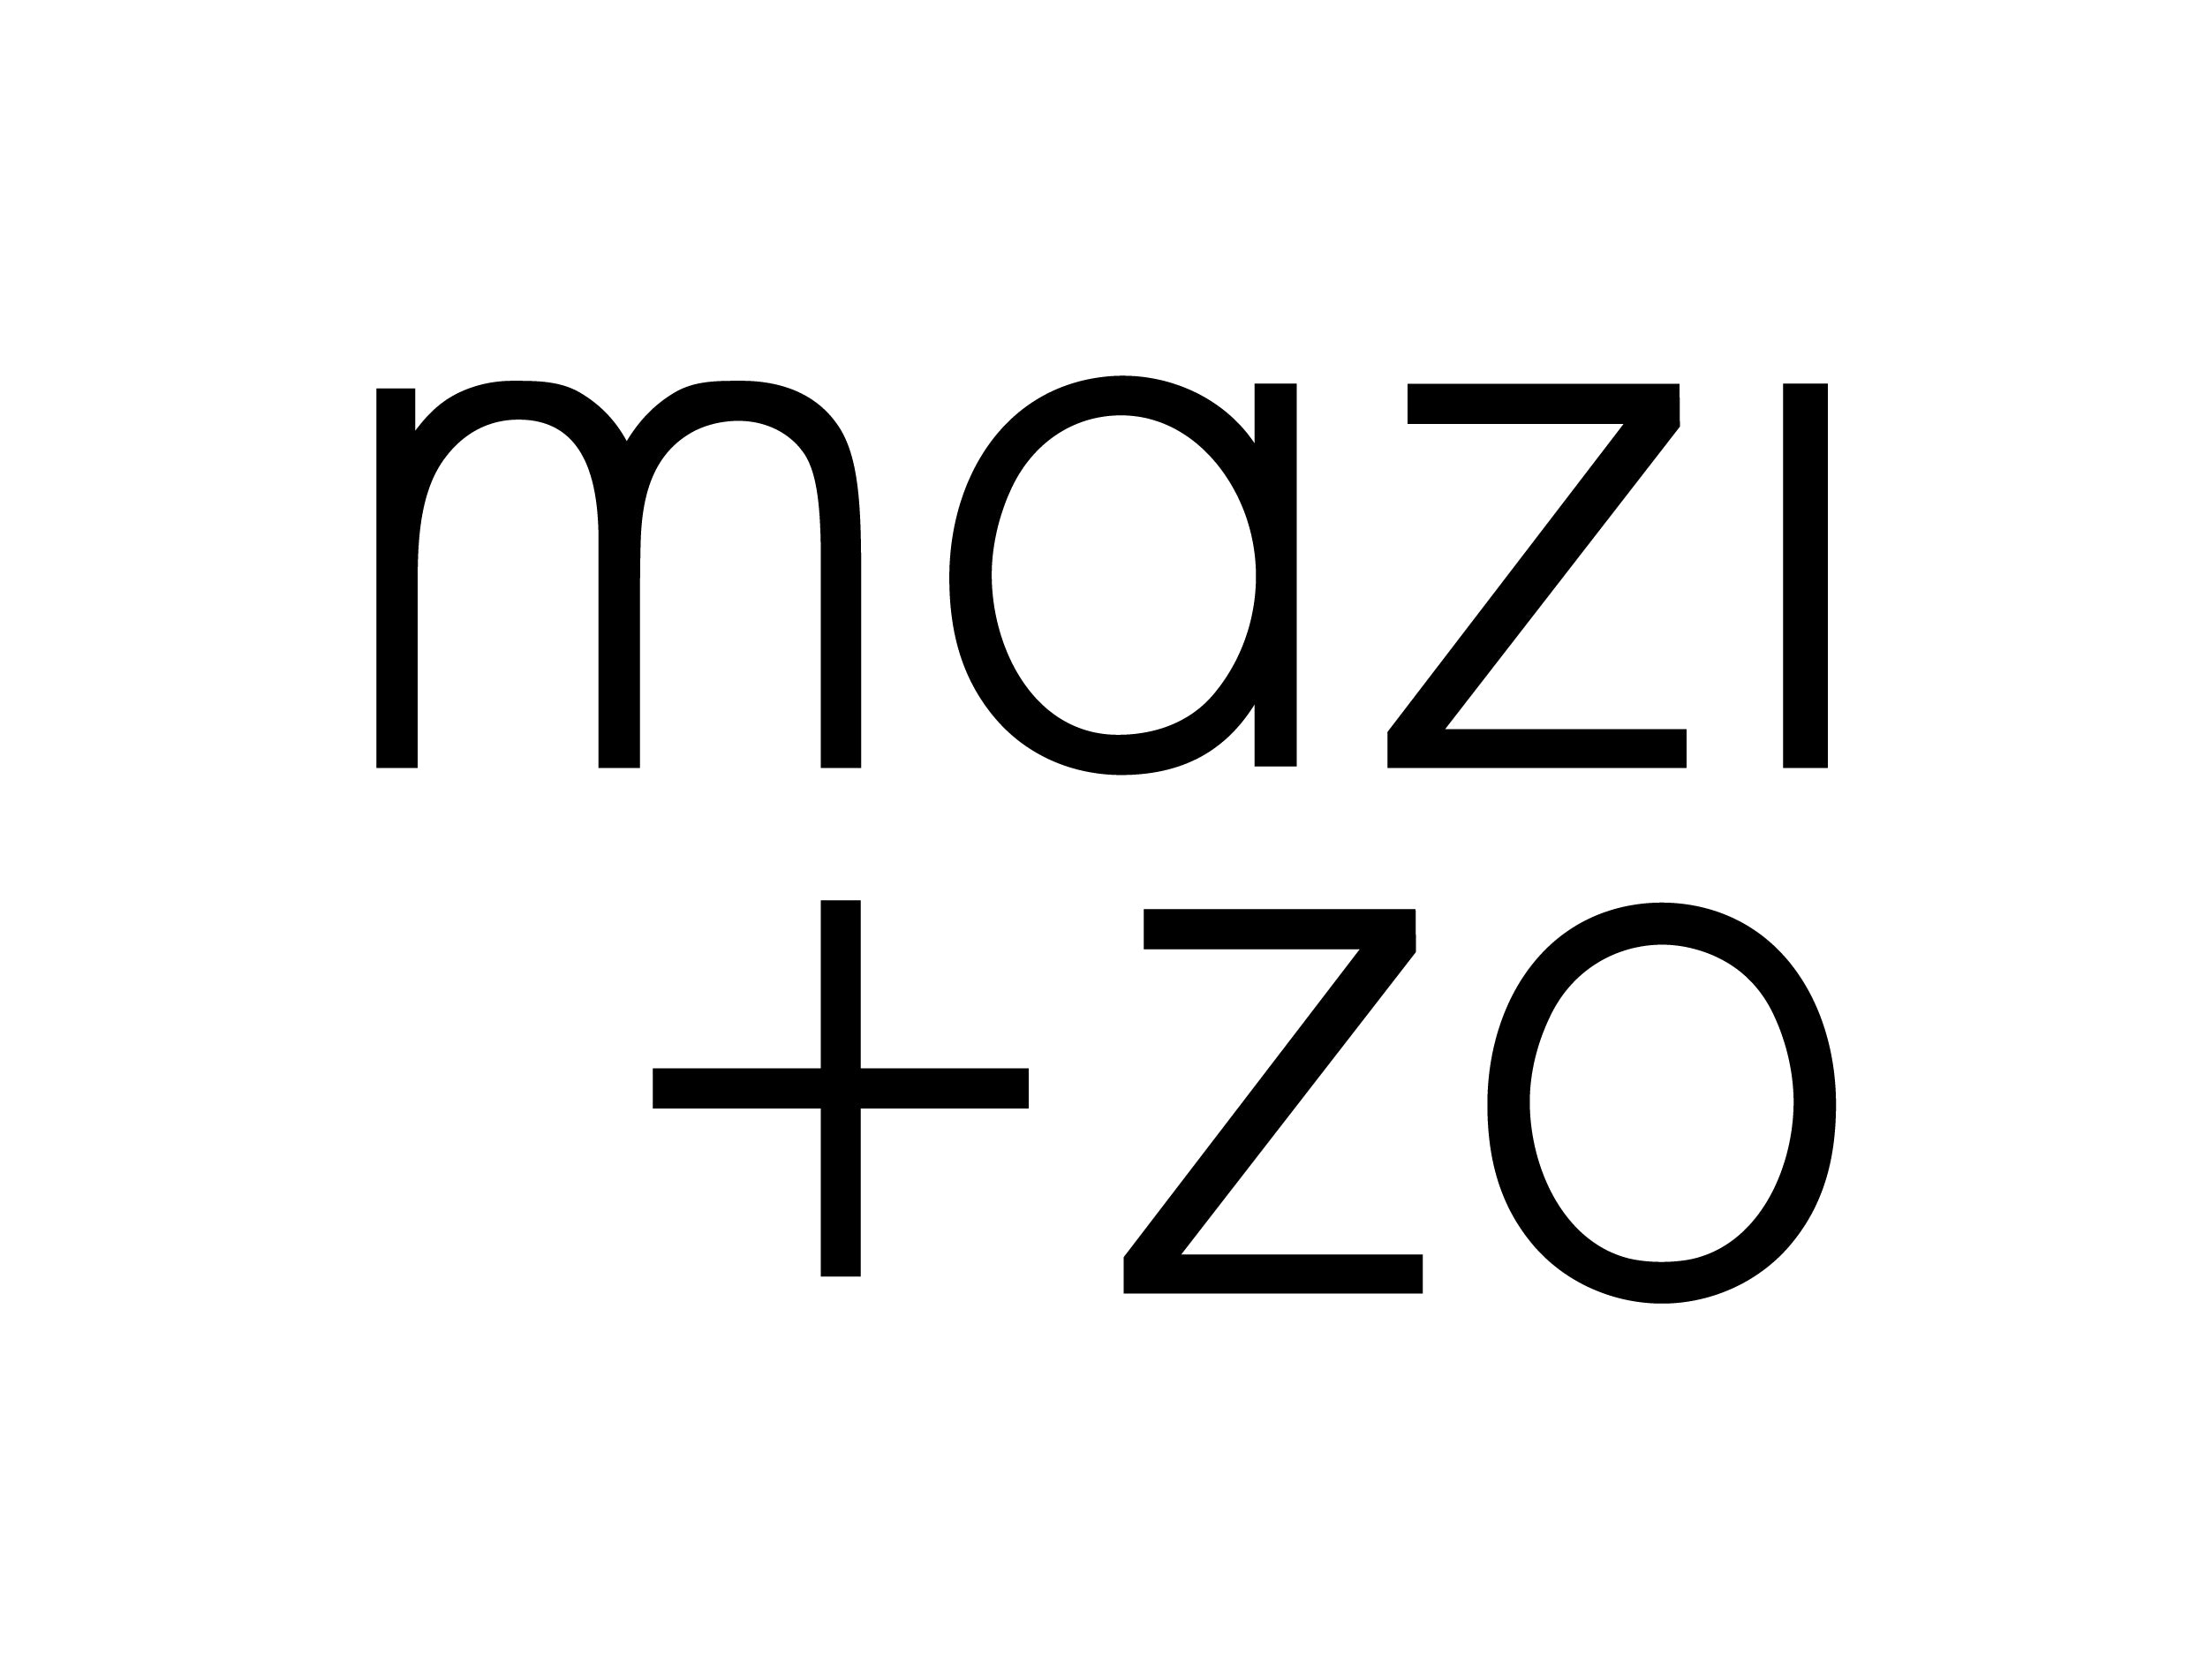 Mazi + zo sorority jewelry black and white logo